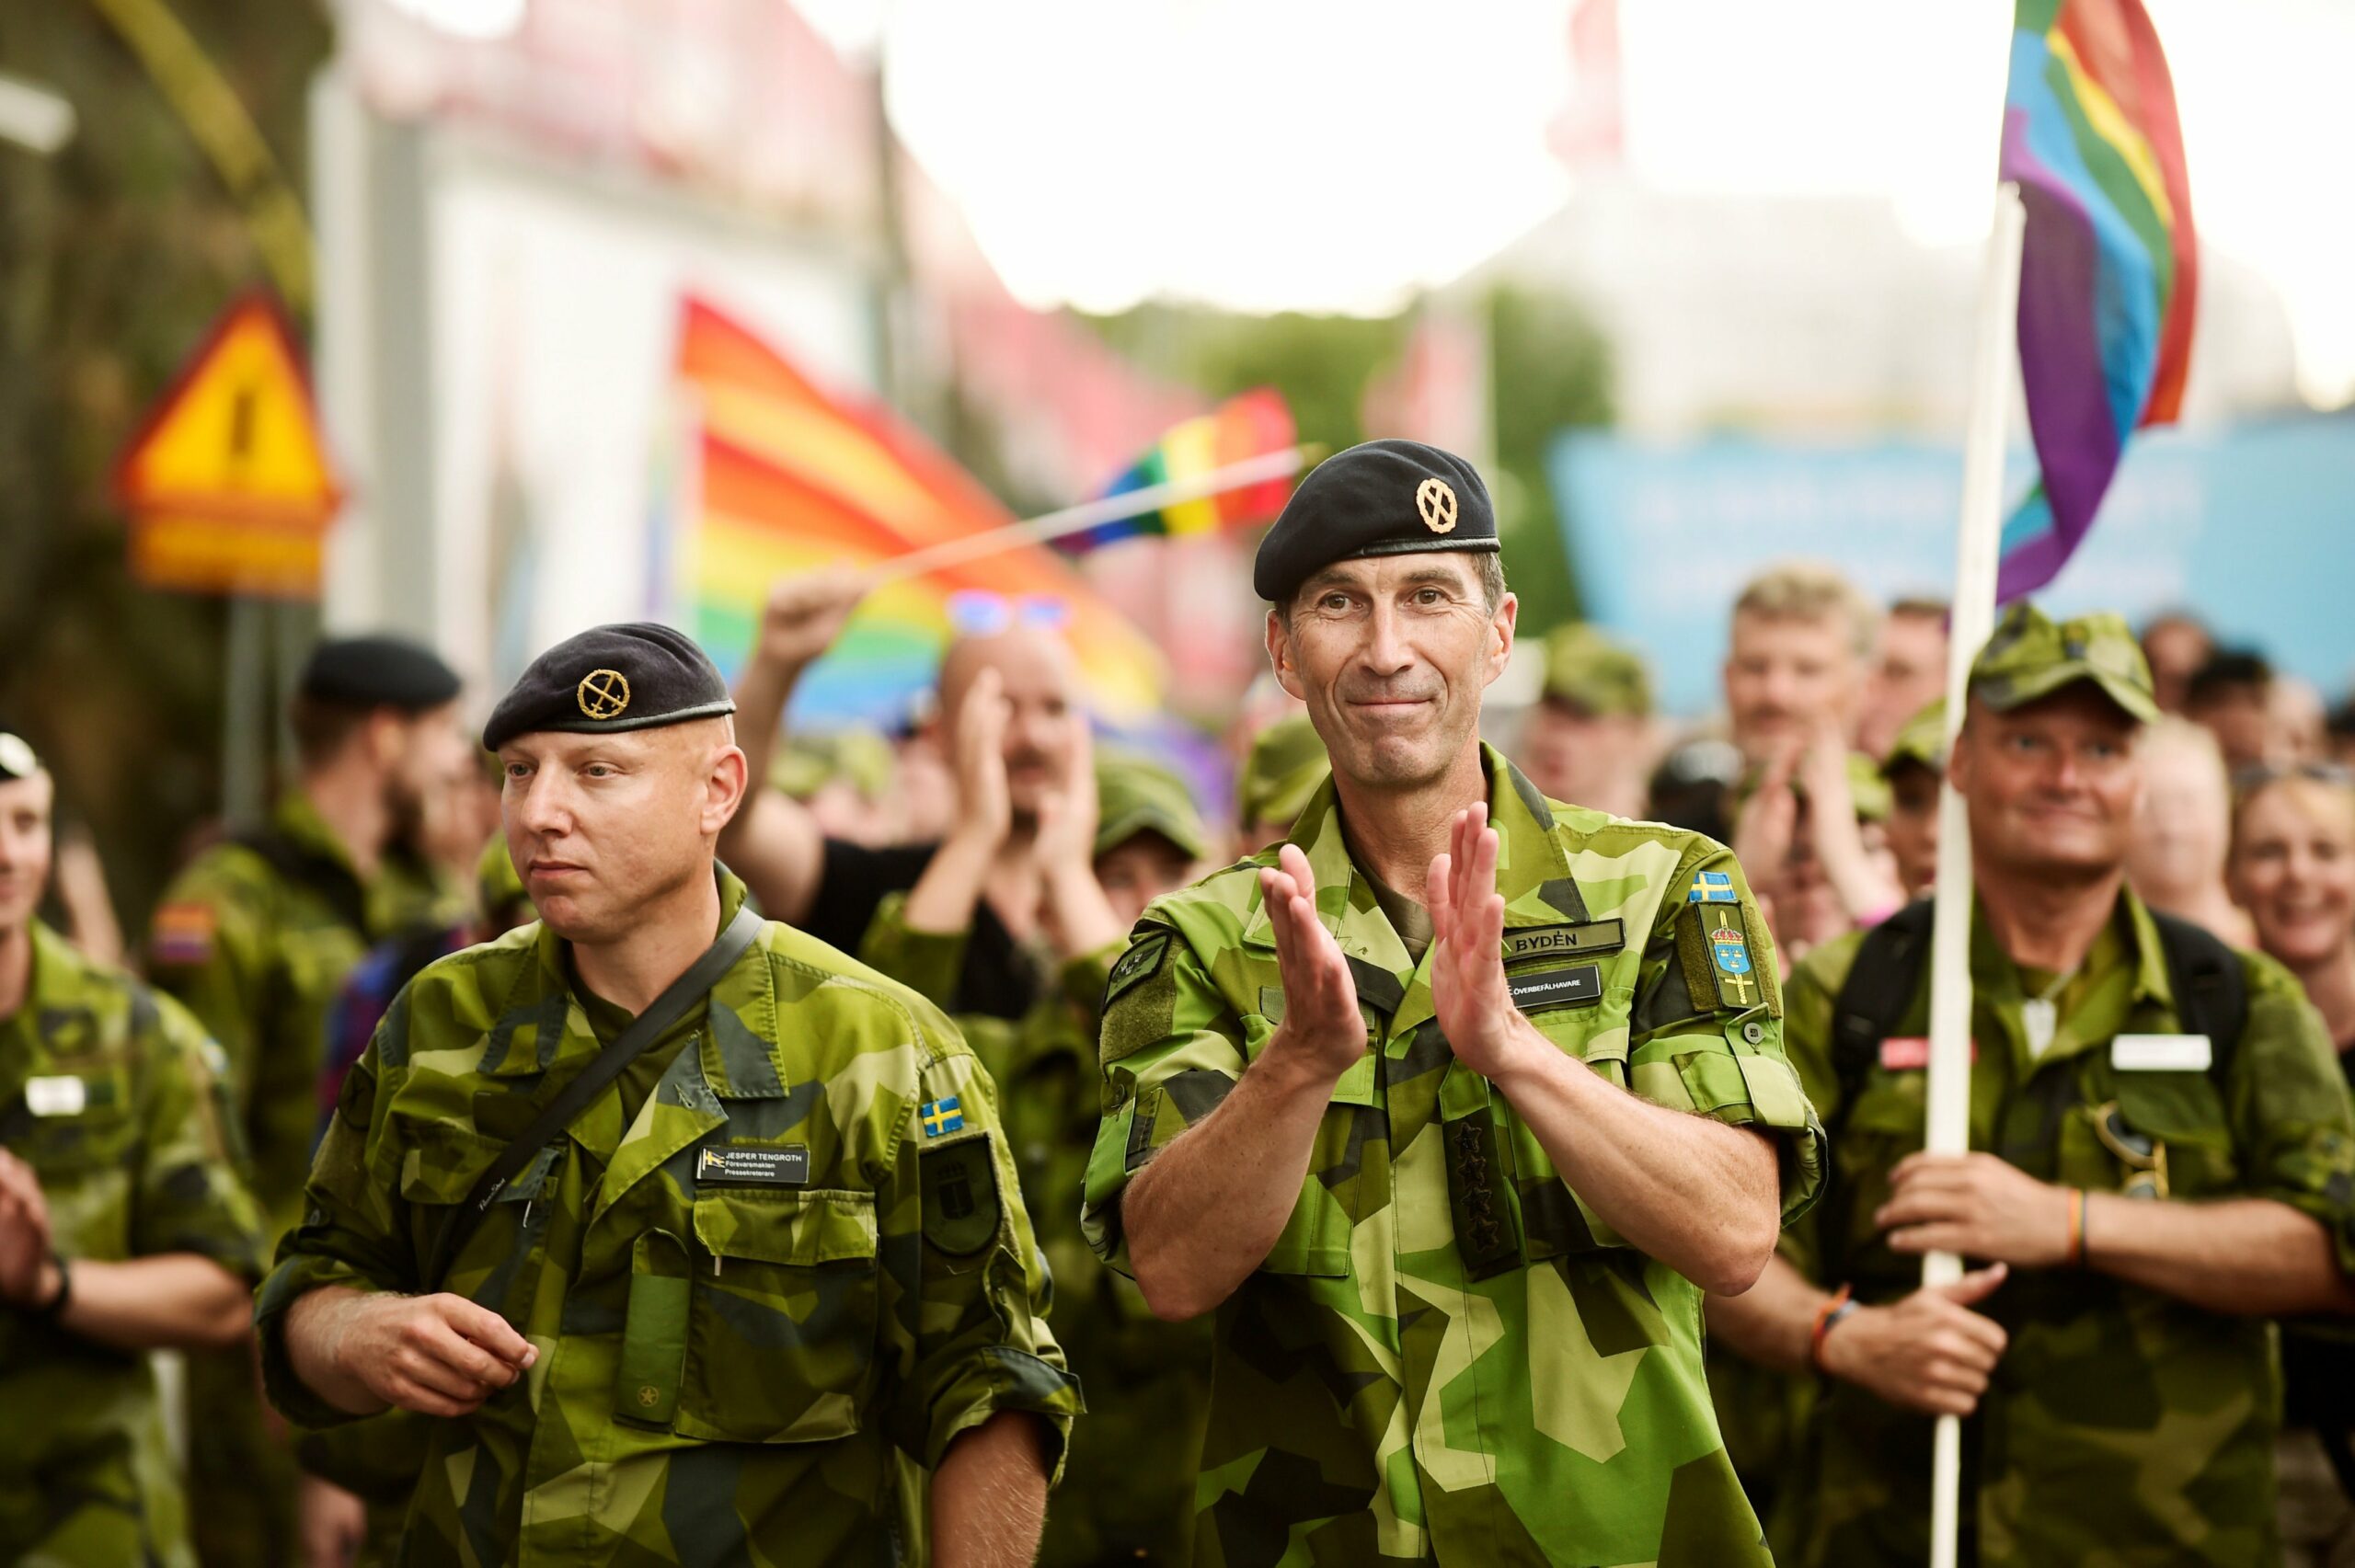 Швеция решила почти вдвое увеличить численность армии из-за «российской угрозы»